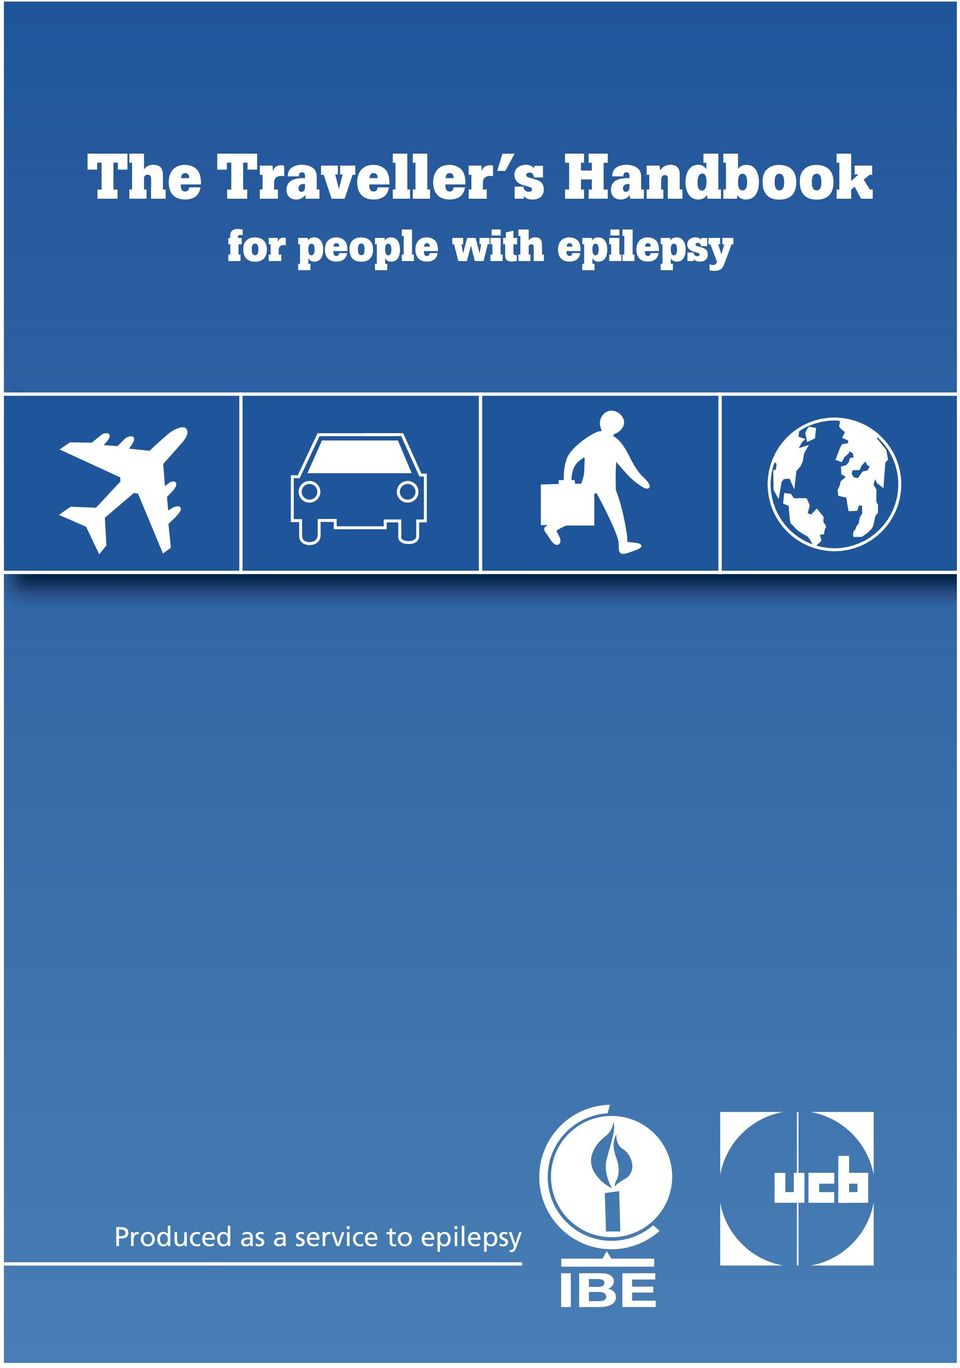 with epilepsy